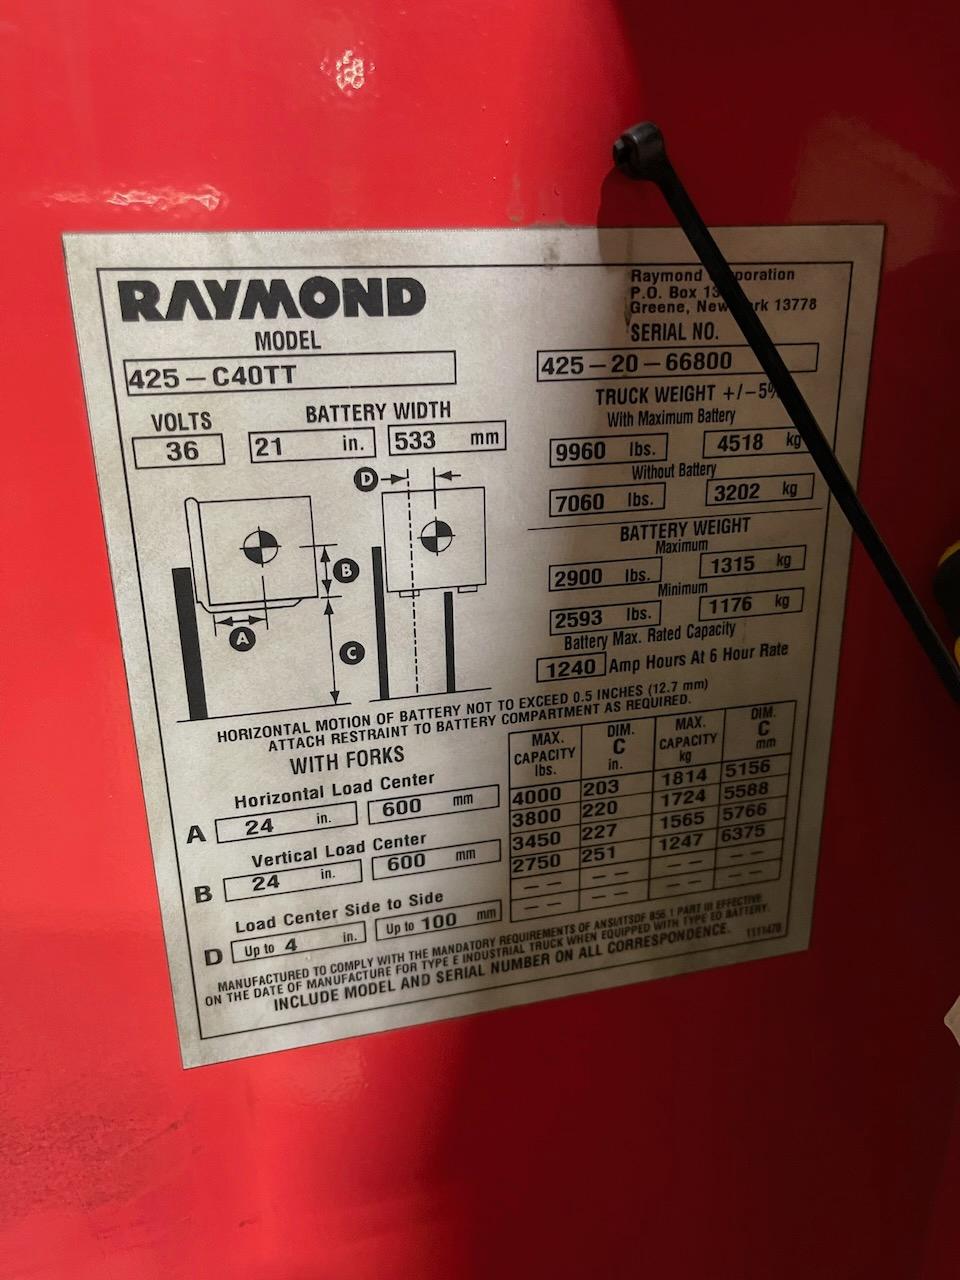 Raymond - Stand Up Forklift - Model 425-C40TT